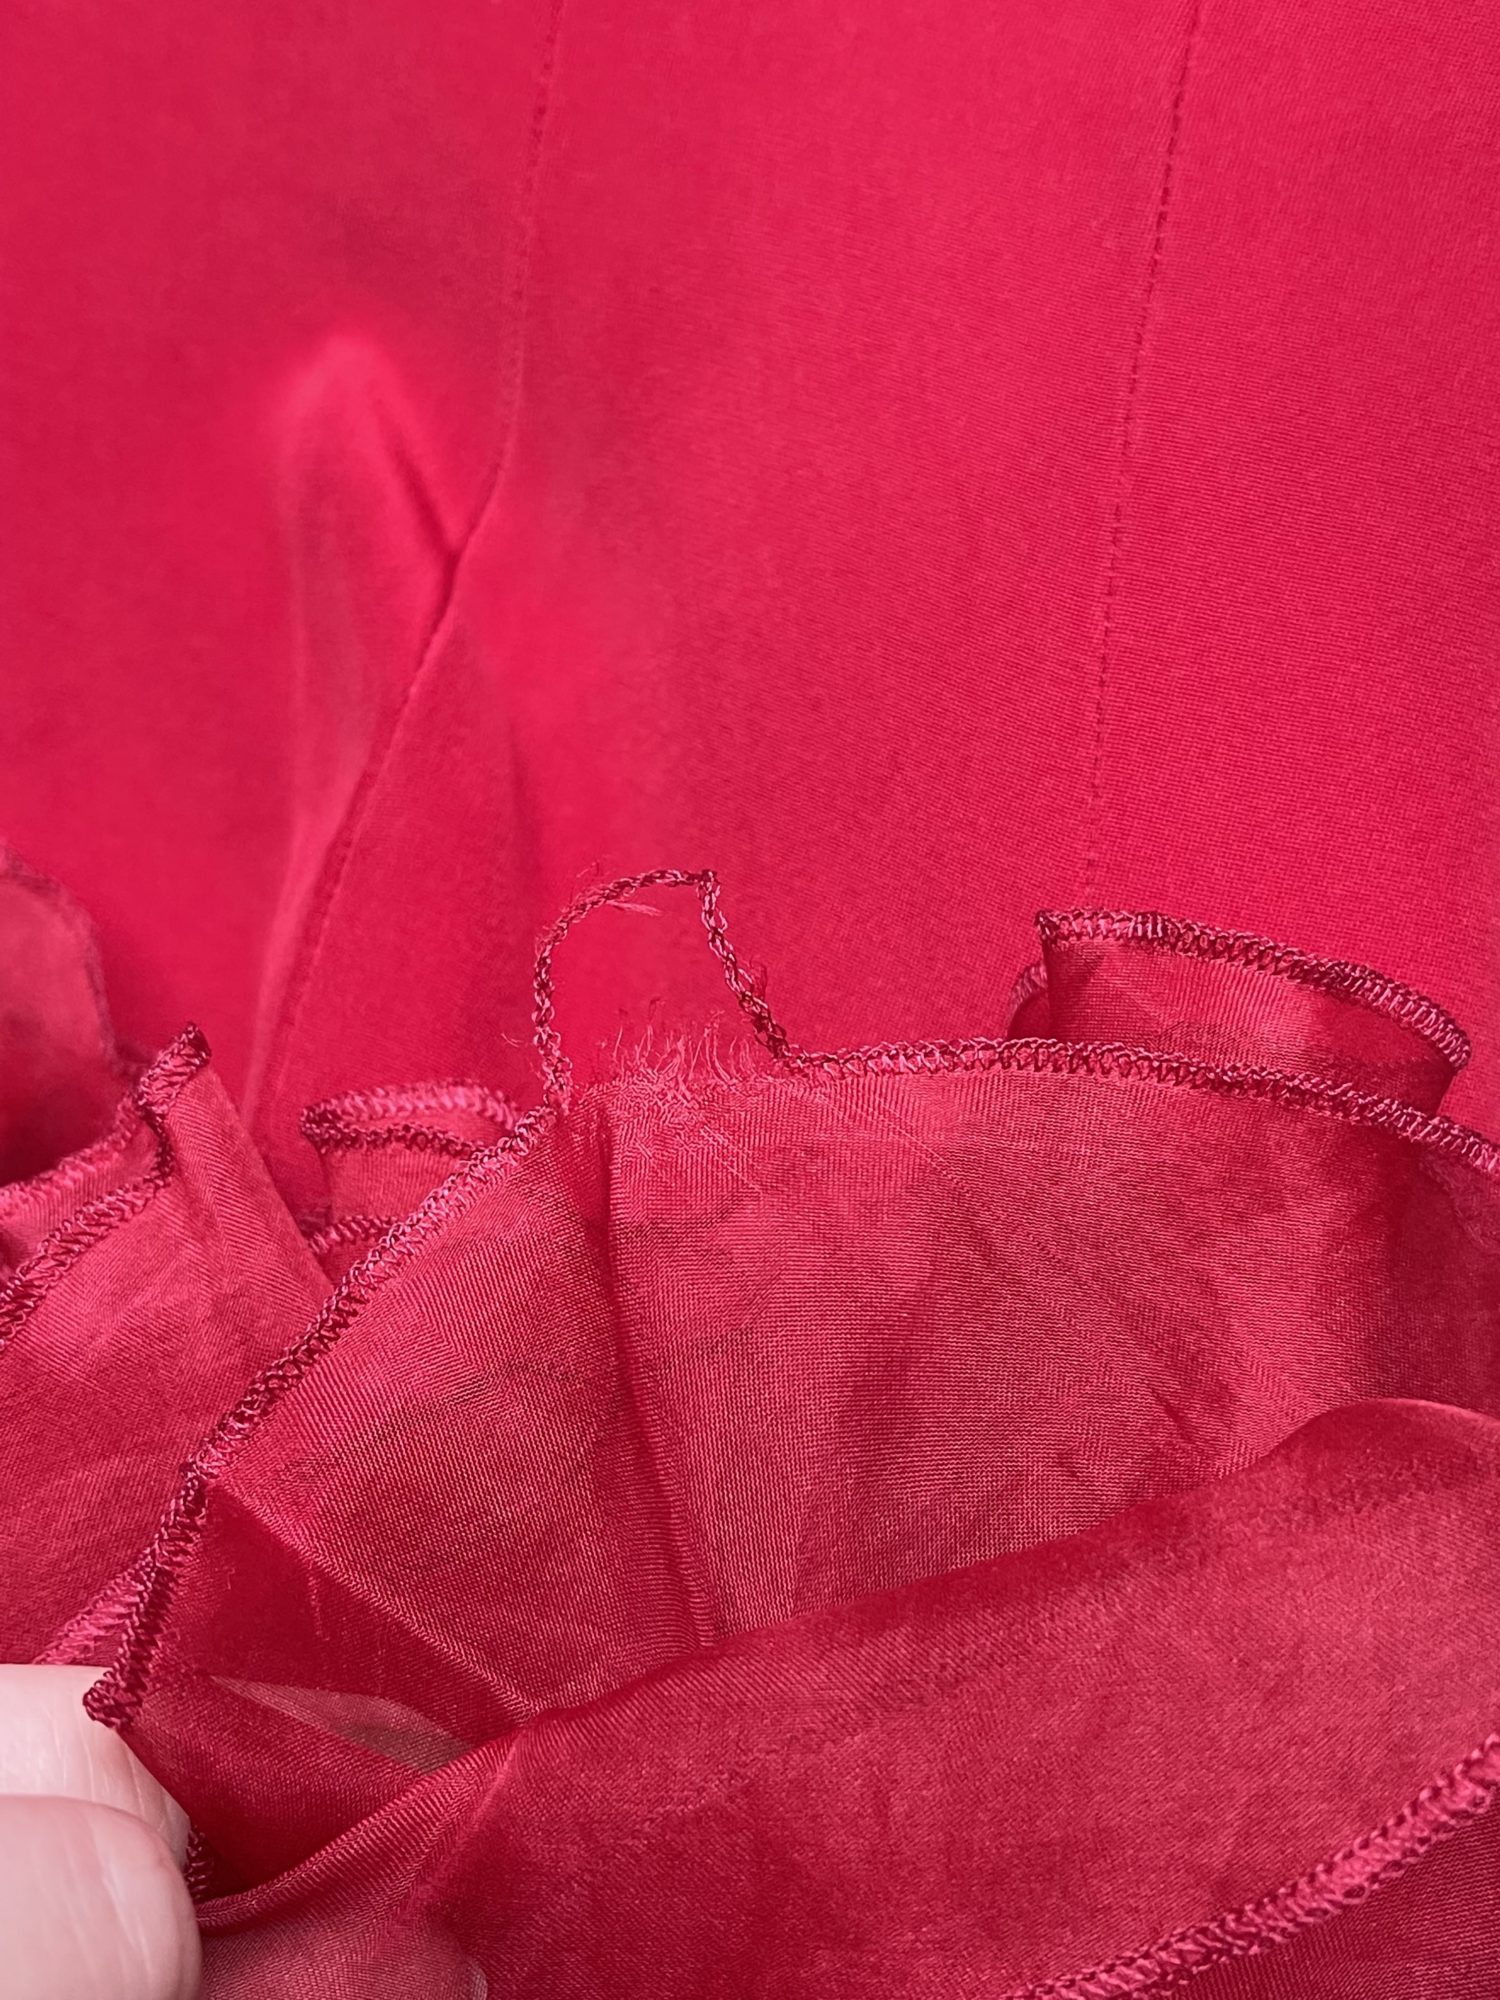 Penelope Mai Red Ruffle Dress – StyleSwap